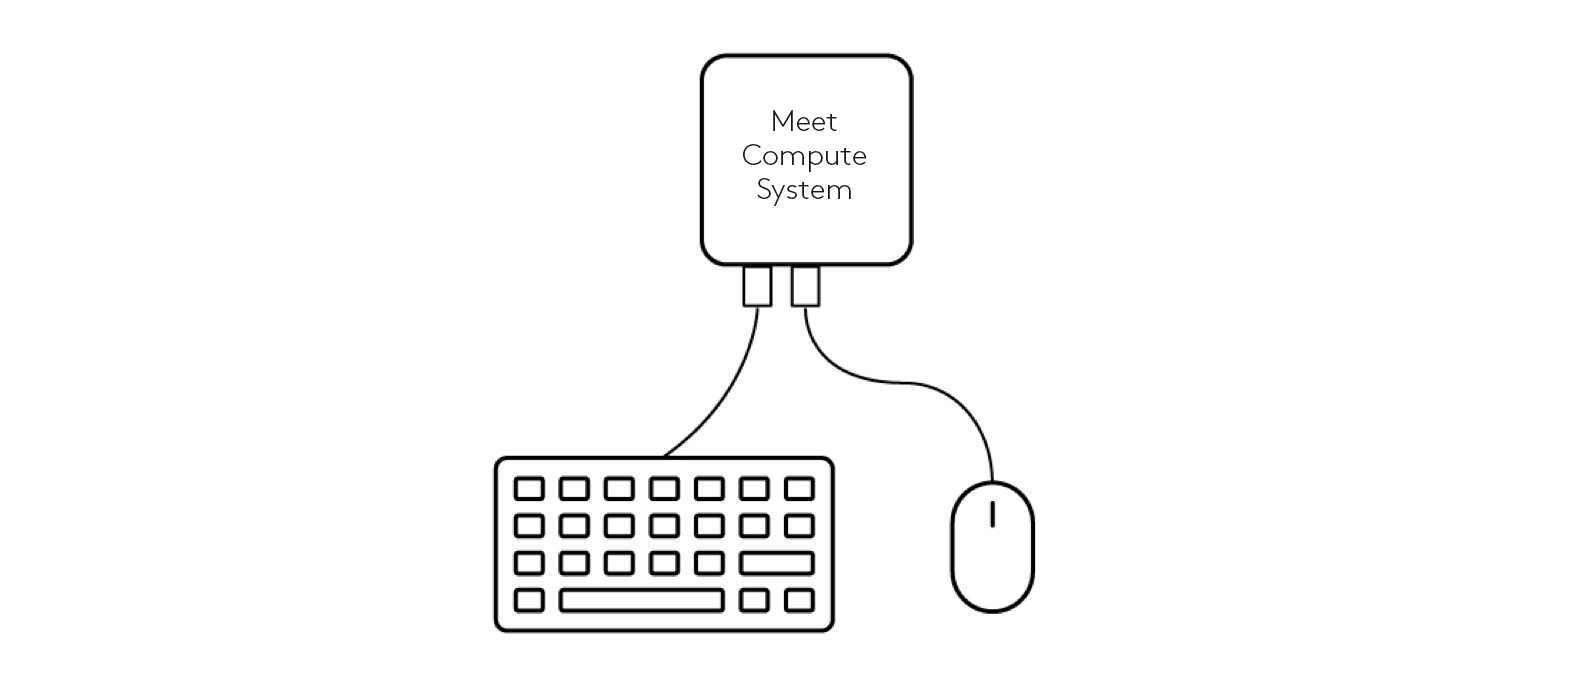 Diagramma delle connessioni della tastiera e del mouse a Meet Compute System